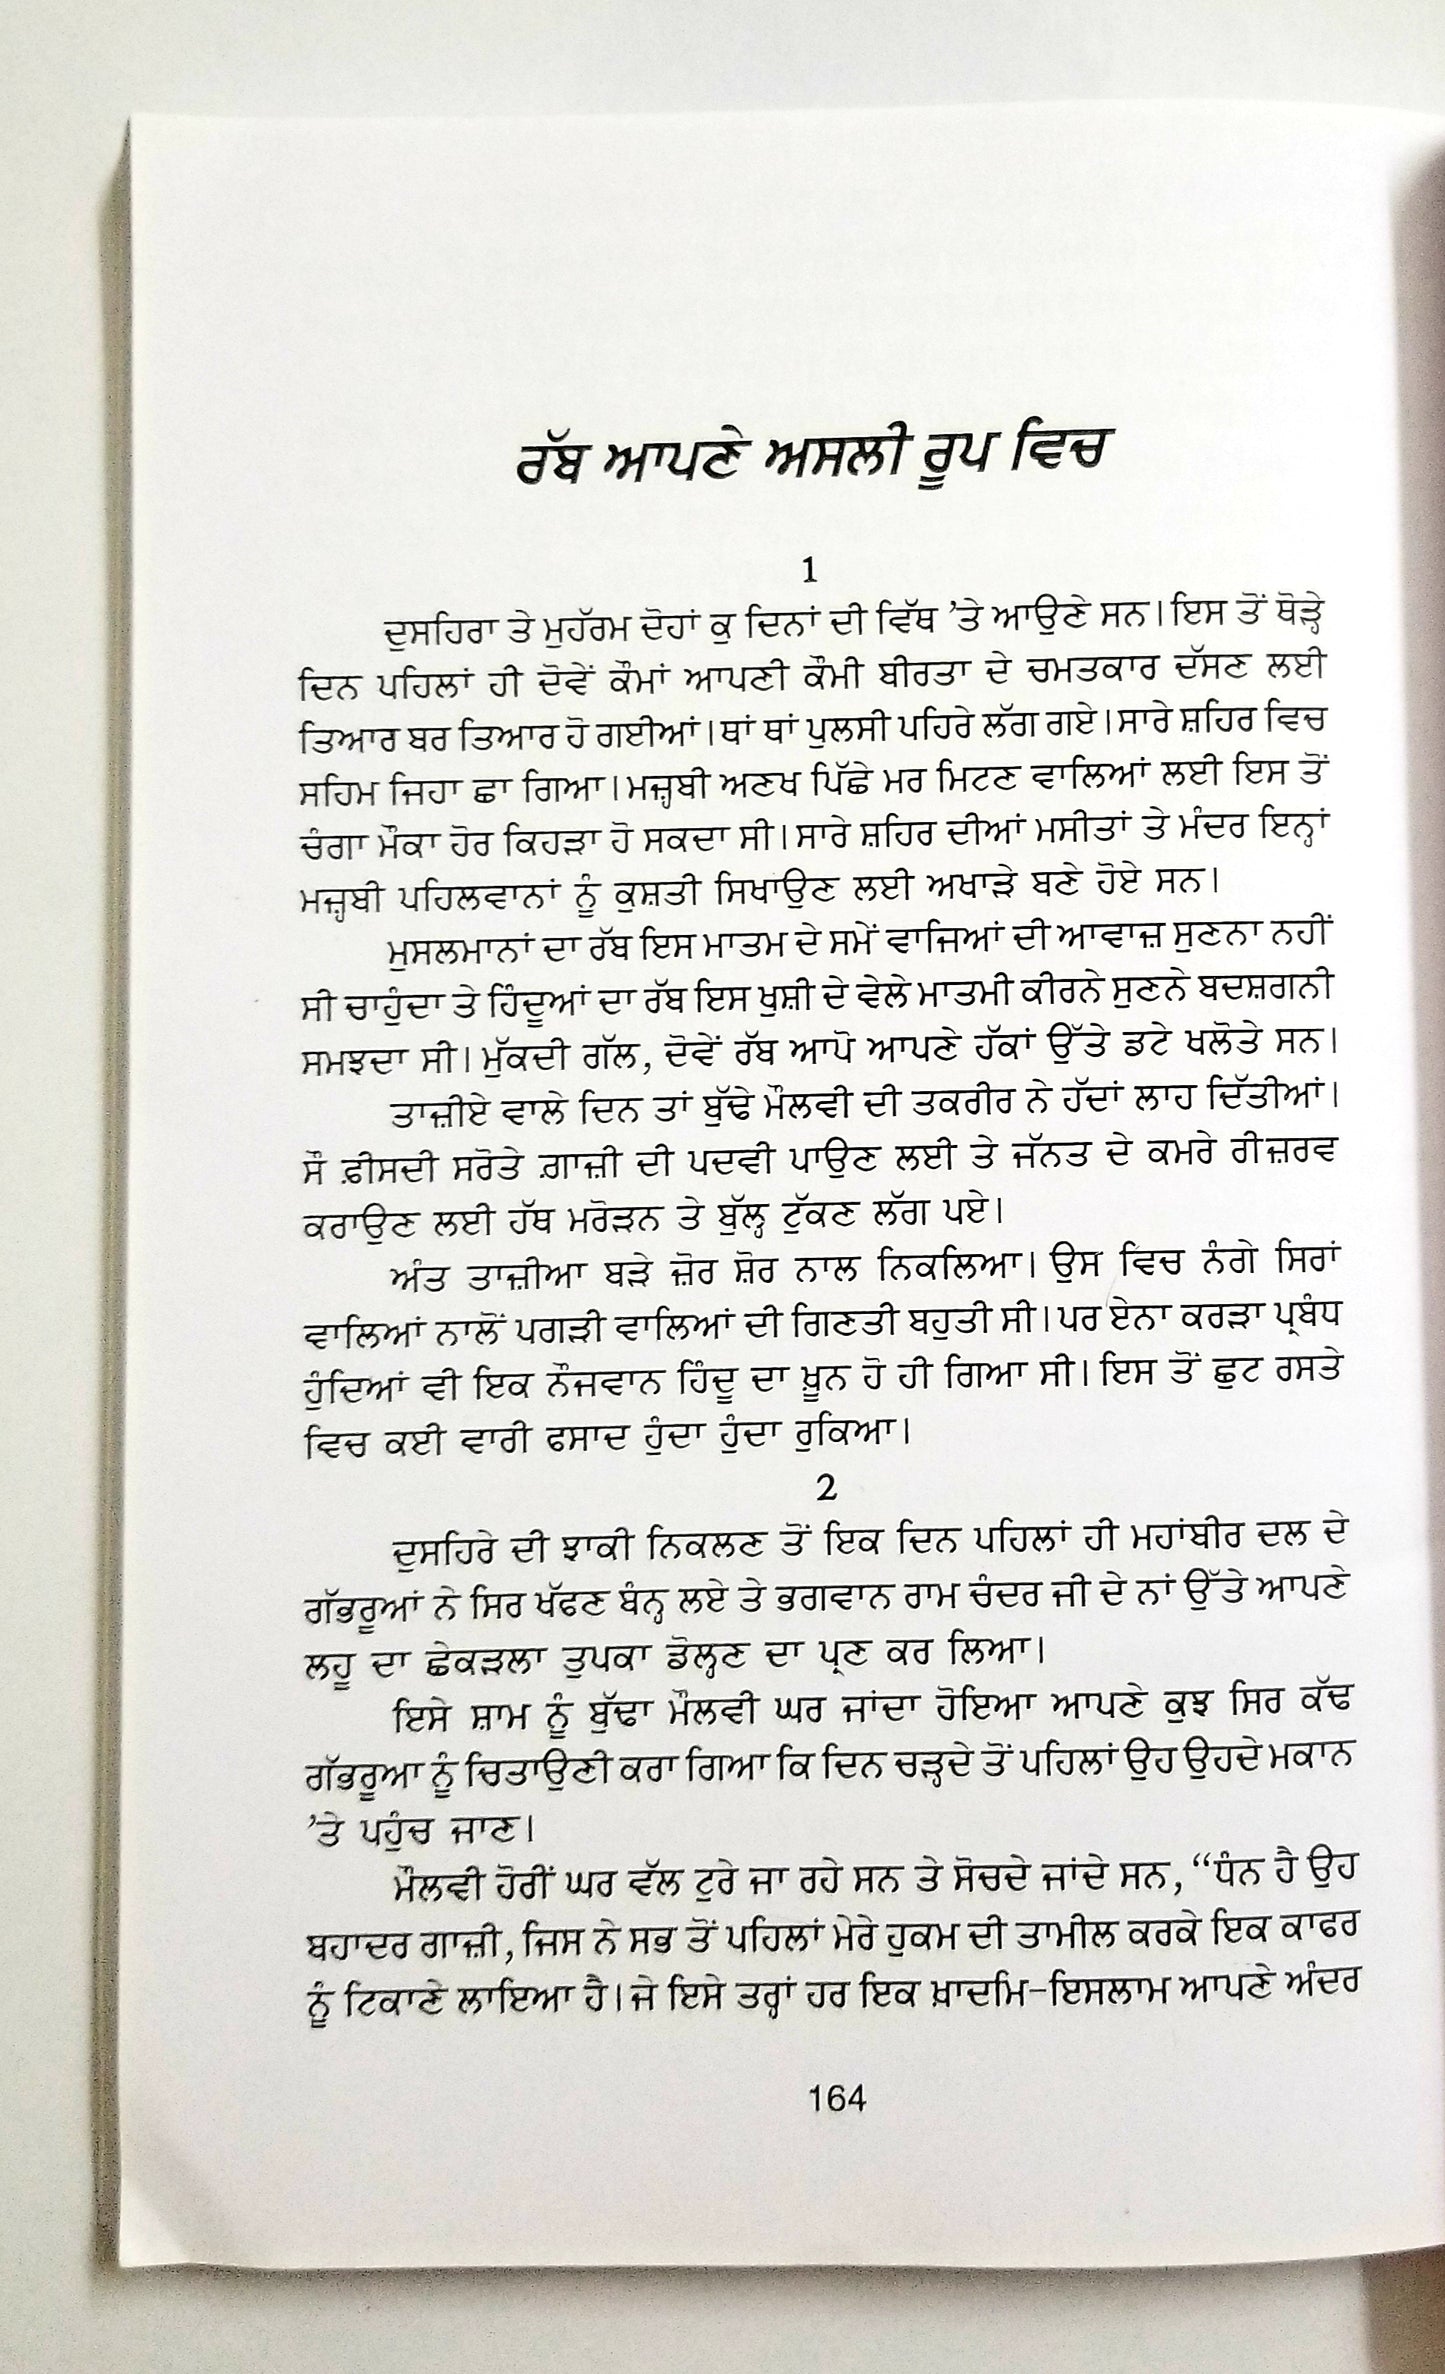 ਨਾਨਕ ਸਿੰਘ ਦੀਆਂ ਸ਼੍ਰੇਸ਼ਠ ਕਹਾਣੀਆਂ  - Nanak Singh Diyaan Sharashat Khaniyaan